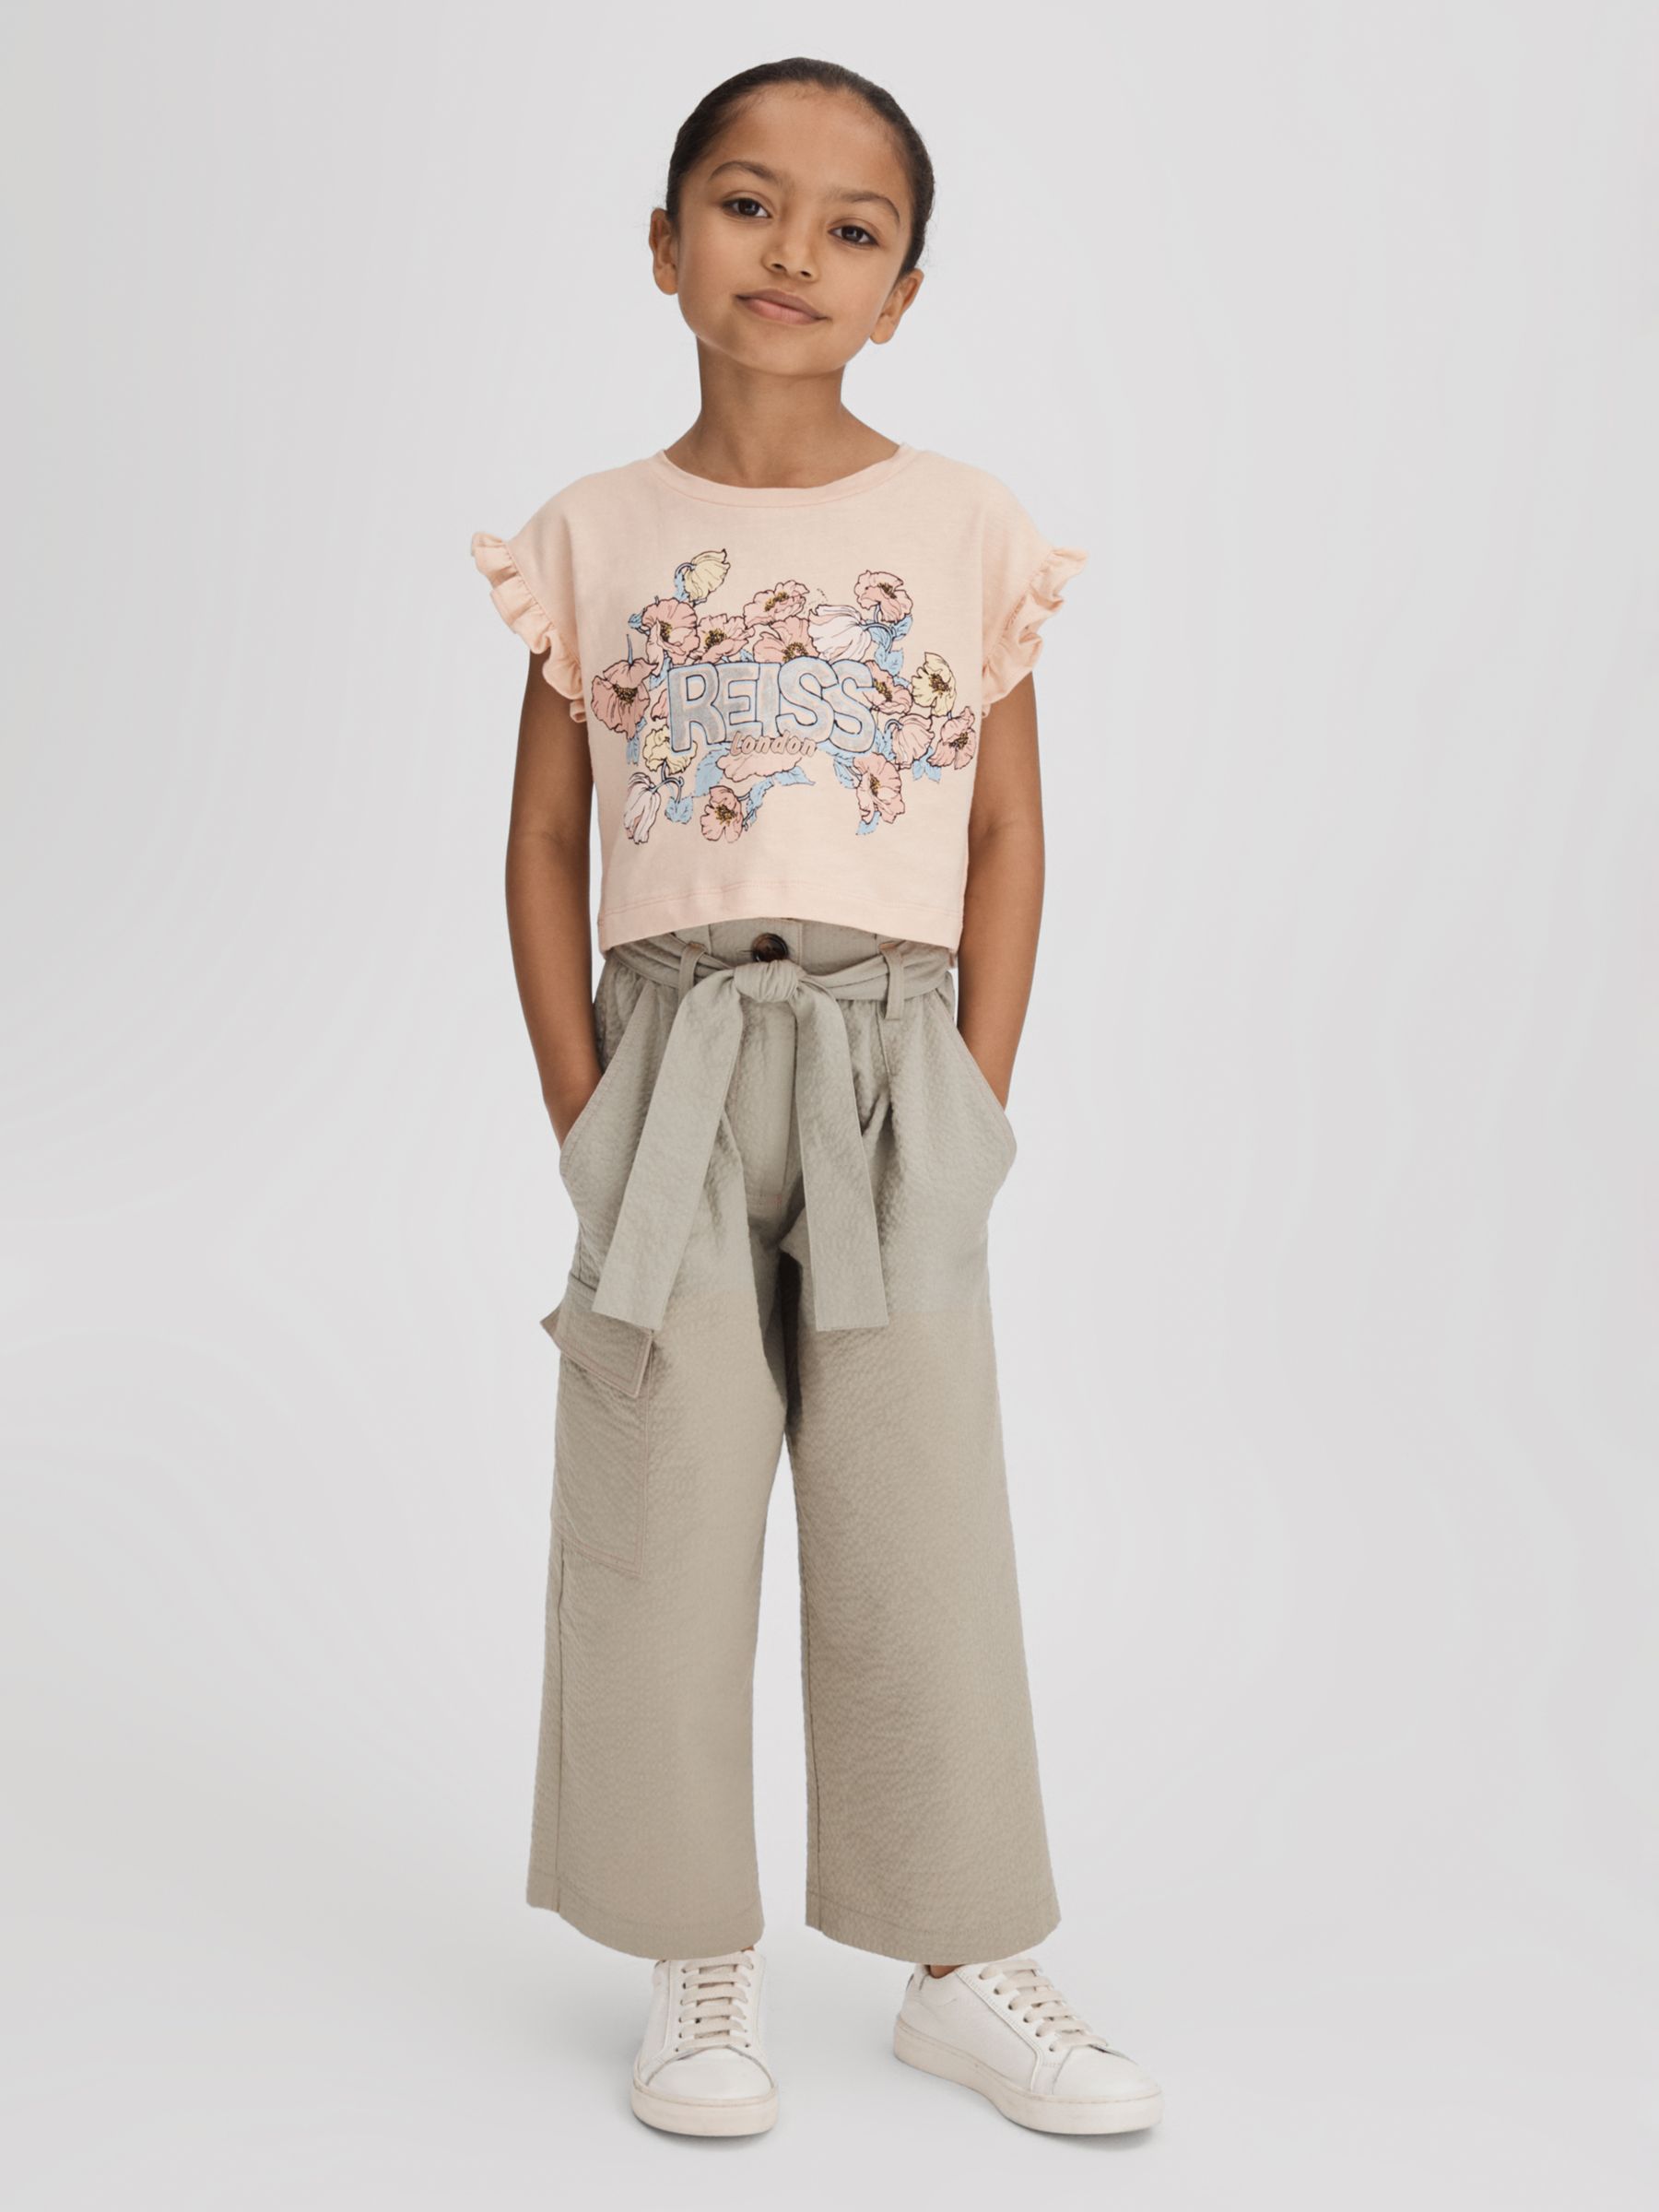 Reiss Kids' Saskia Floral Logo Ruffle Cropped T-Shirt, Pink, 11-12Y